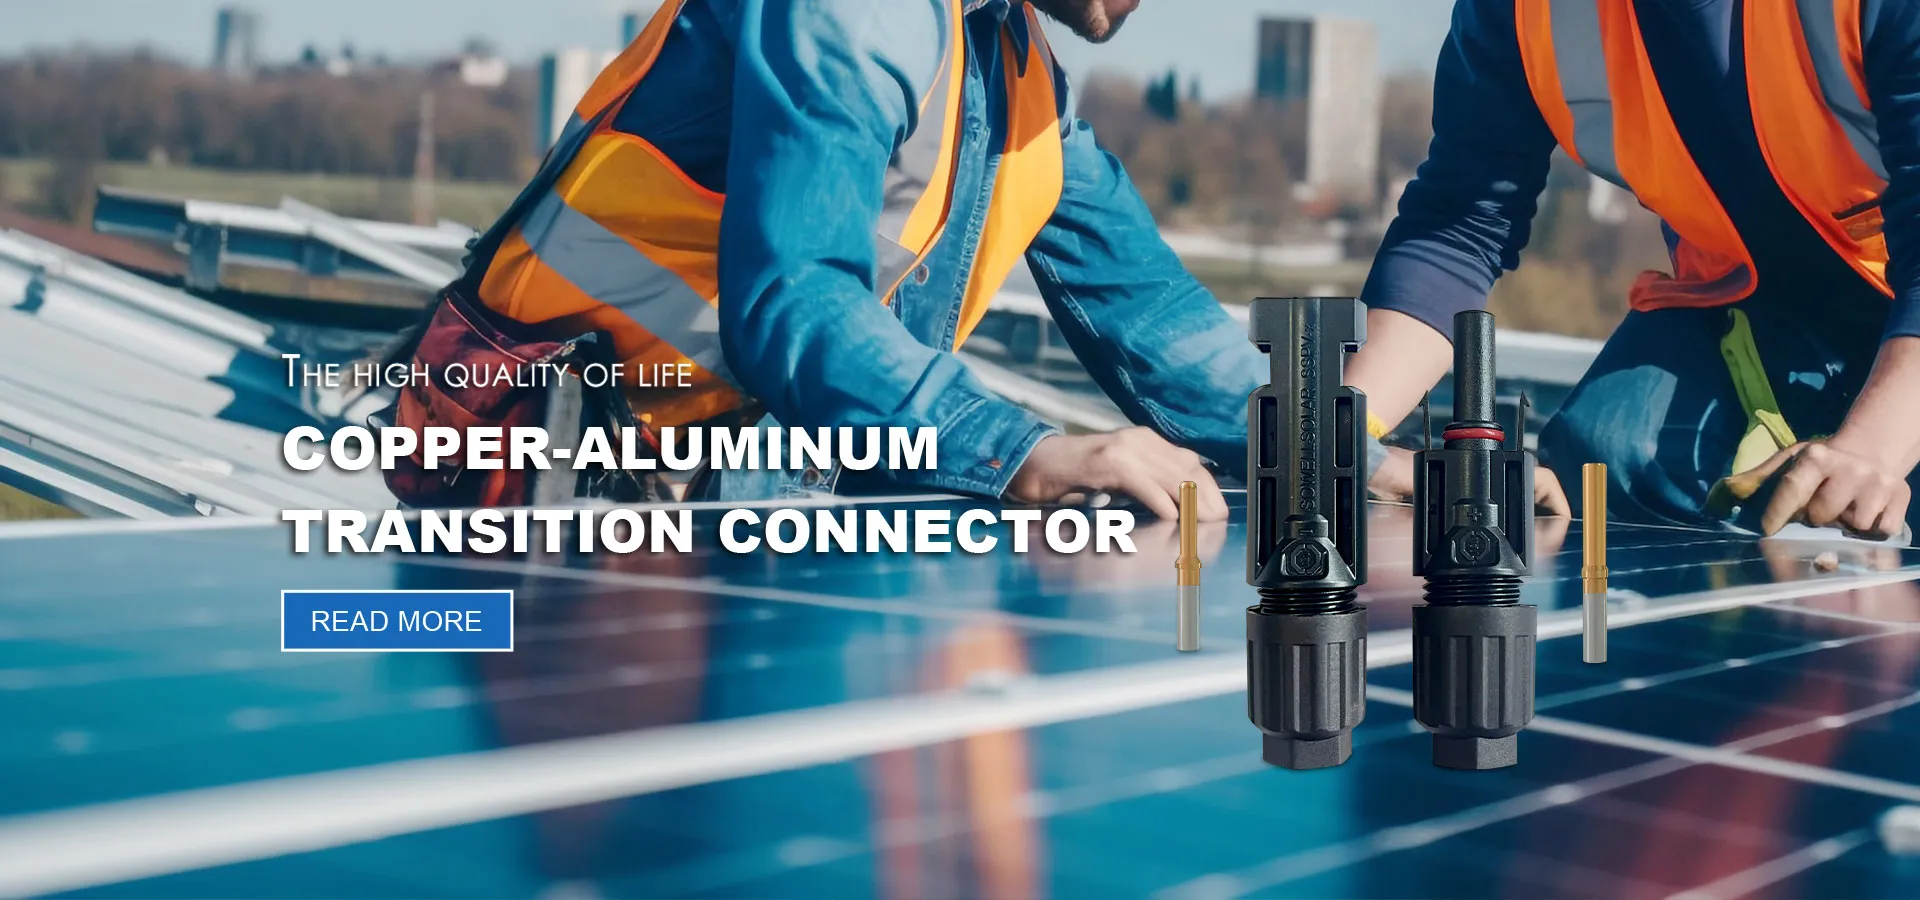 Produsenter og leverandører av solcellekabel av aluminiumslegering